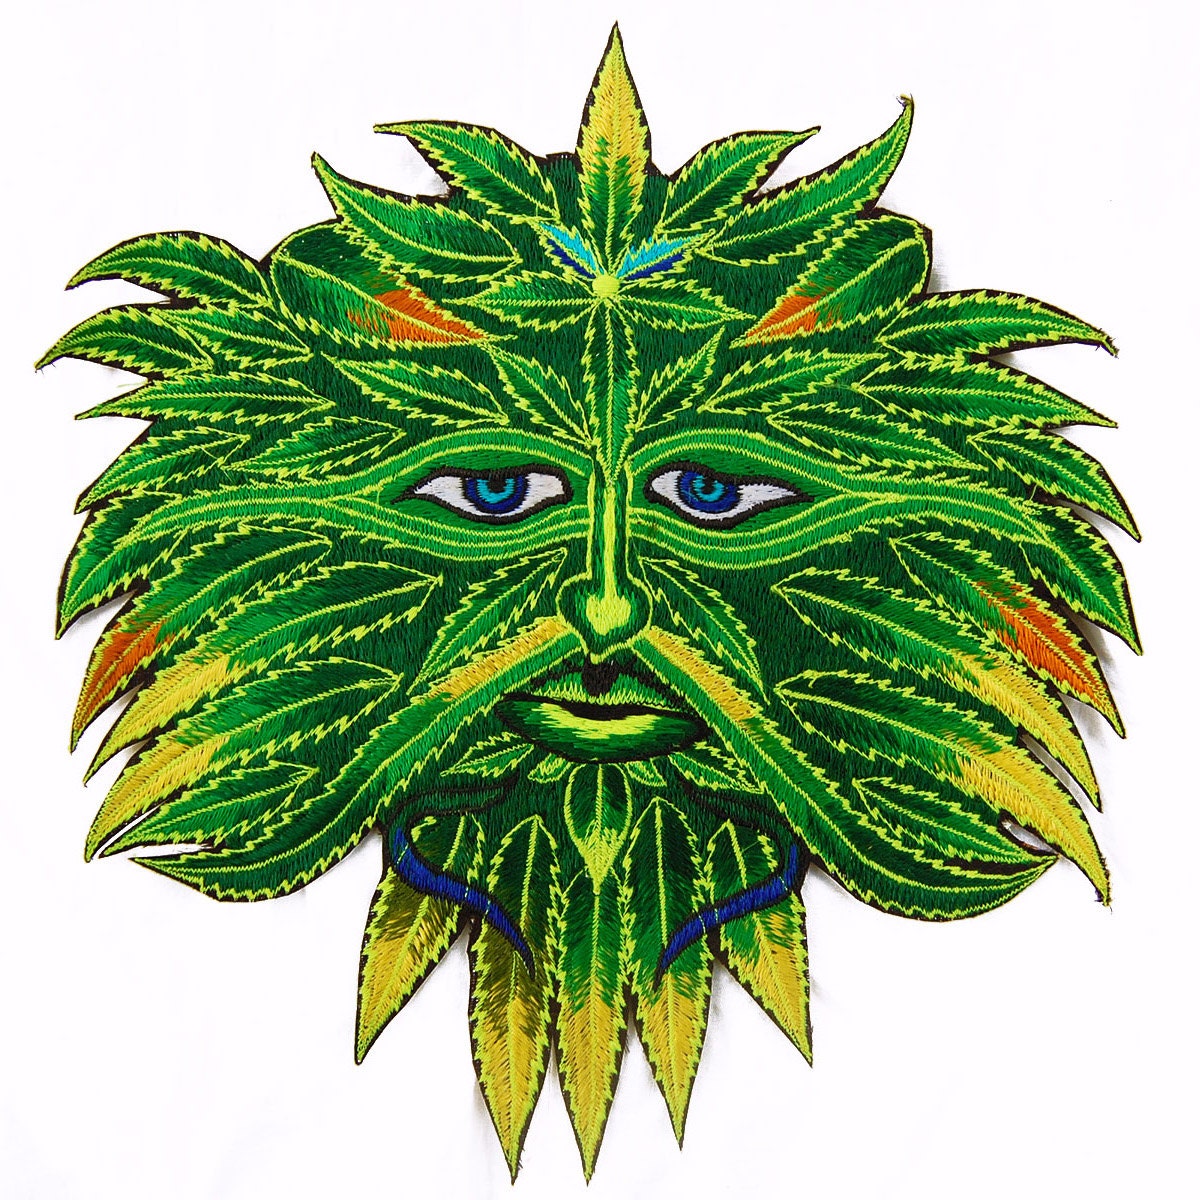 Weed Spirit T-Shirt weed cannabis marihuana psilos psychedelic no print goa t-shirt